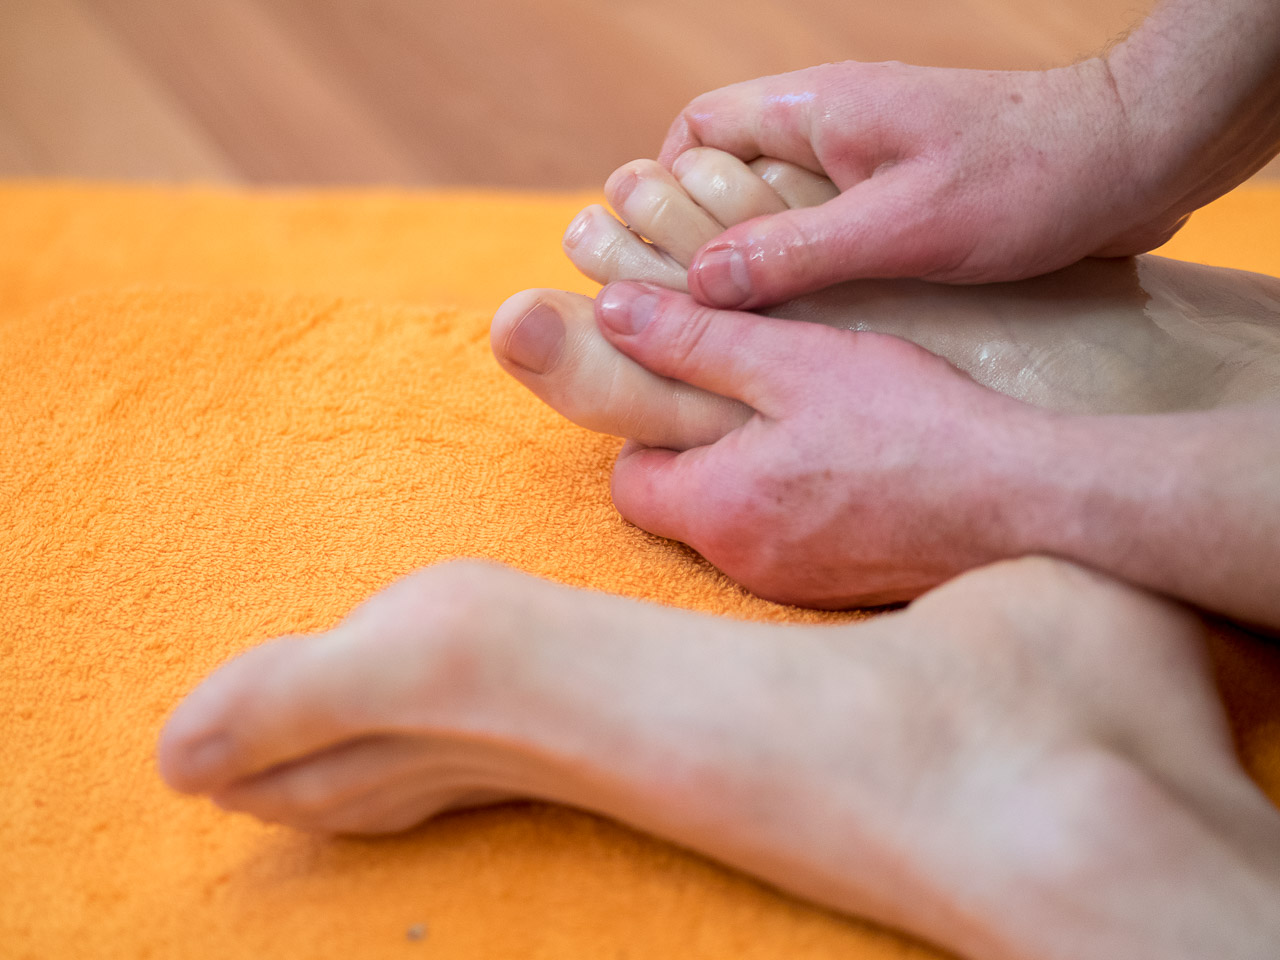 Massage bien-être, homme, massage des pieds, homme. Que ce soit avec fermeté, douceur ou sensualité, le massage des pieds trouvent beaucoup d'adeptes enthousiastes ! De plus, l'huile permet de nourrir cette partie de notre corps où la peau est souvent particulièrement sèche.